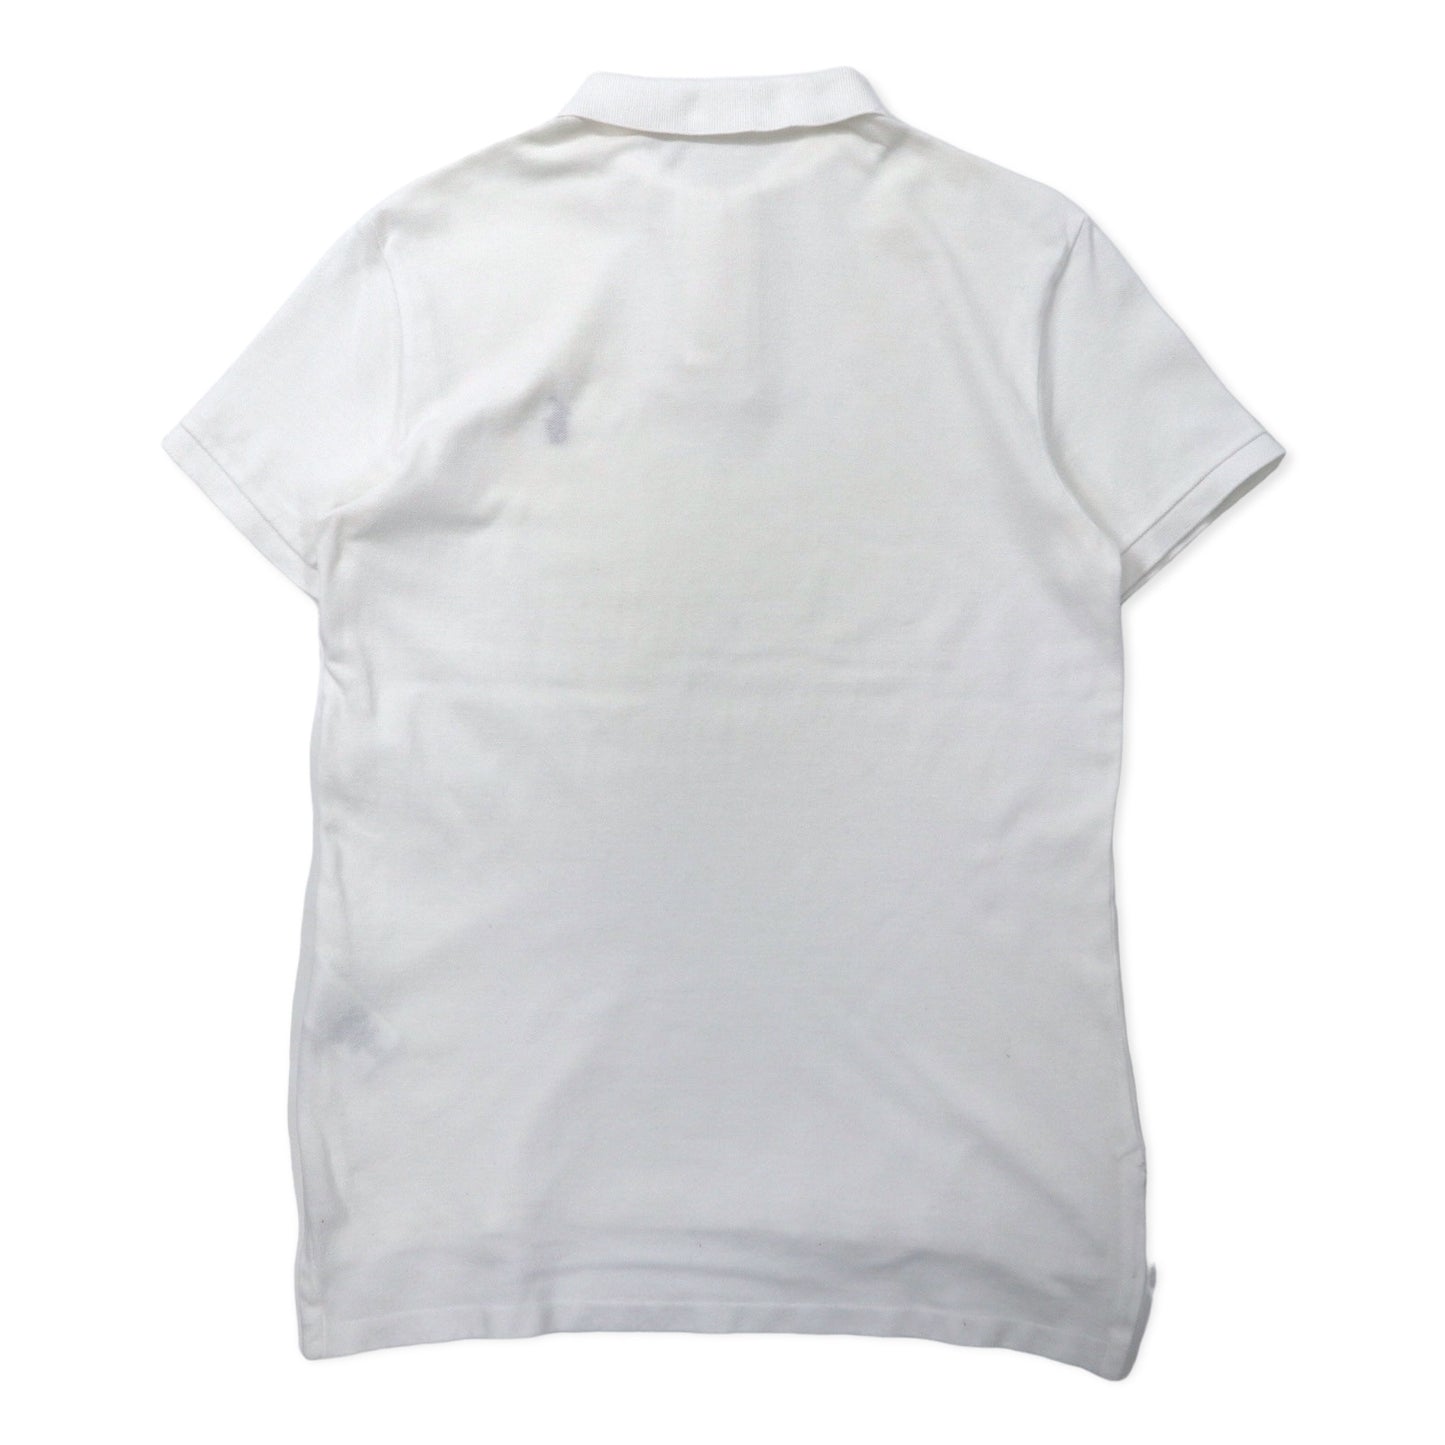 POLO RALPH LAUREN ポロシャツ 170 ホワイト コットン 鹿の子 スモールポニー刺繍